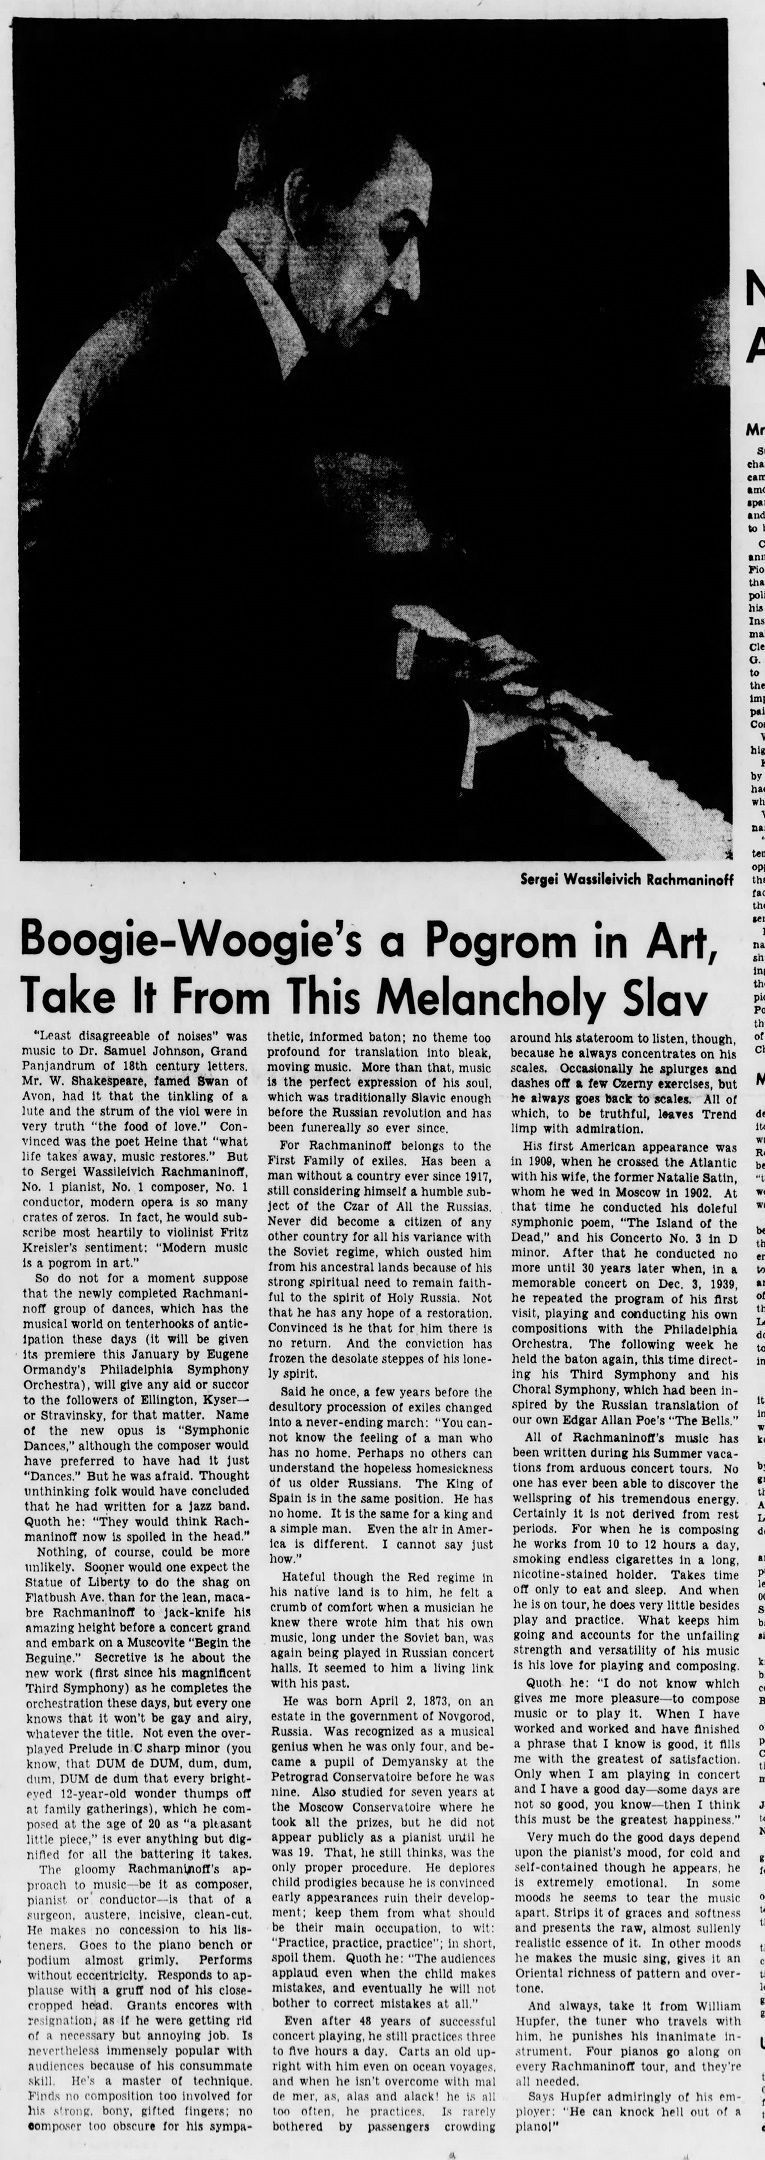 The_Brooklyn_Daily_Eagle_Sun__Oct_20__1940_(4).jpg